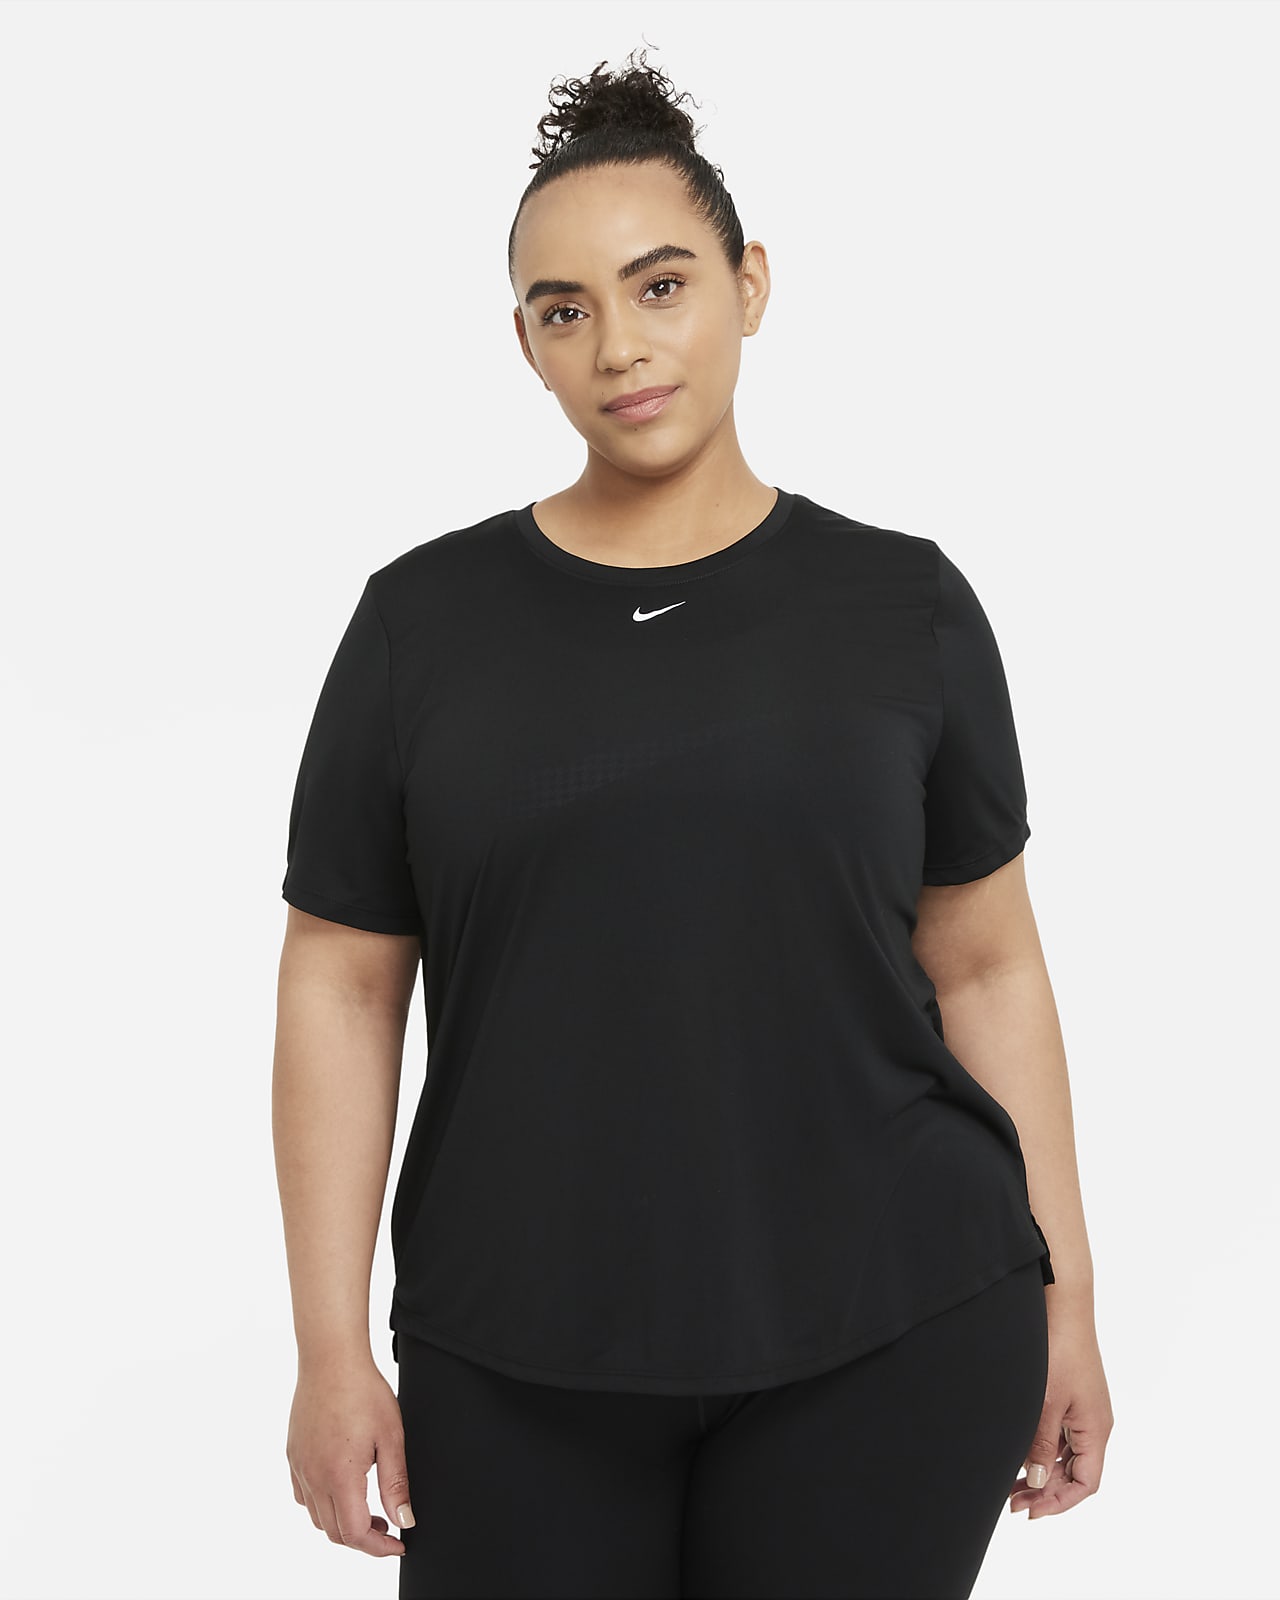 Γυναικεία κοντομάνικη μπλούζα με κανονική εφαρμογή Nike Dri-FIT One (μεγάλα μεγέθη)